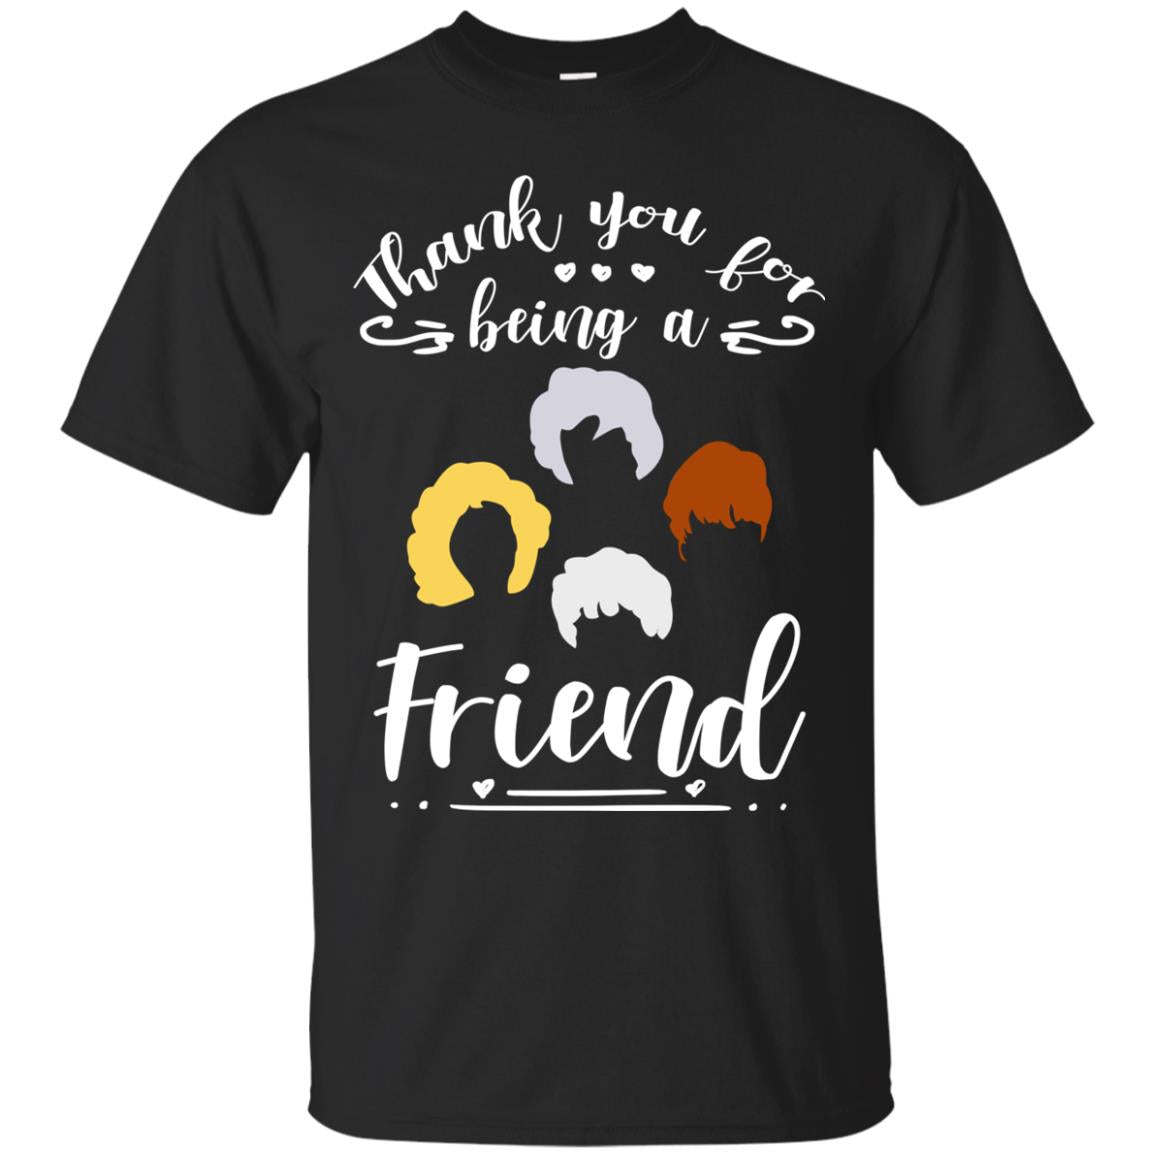 Thank You For Being A Friend ShirtG200 Gildan Ultra Cotton T-Shirt